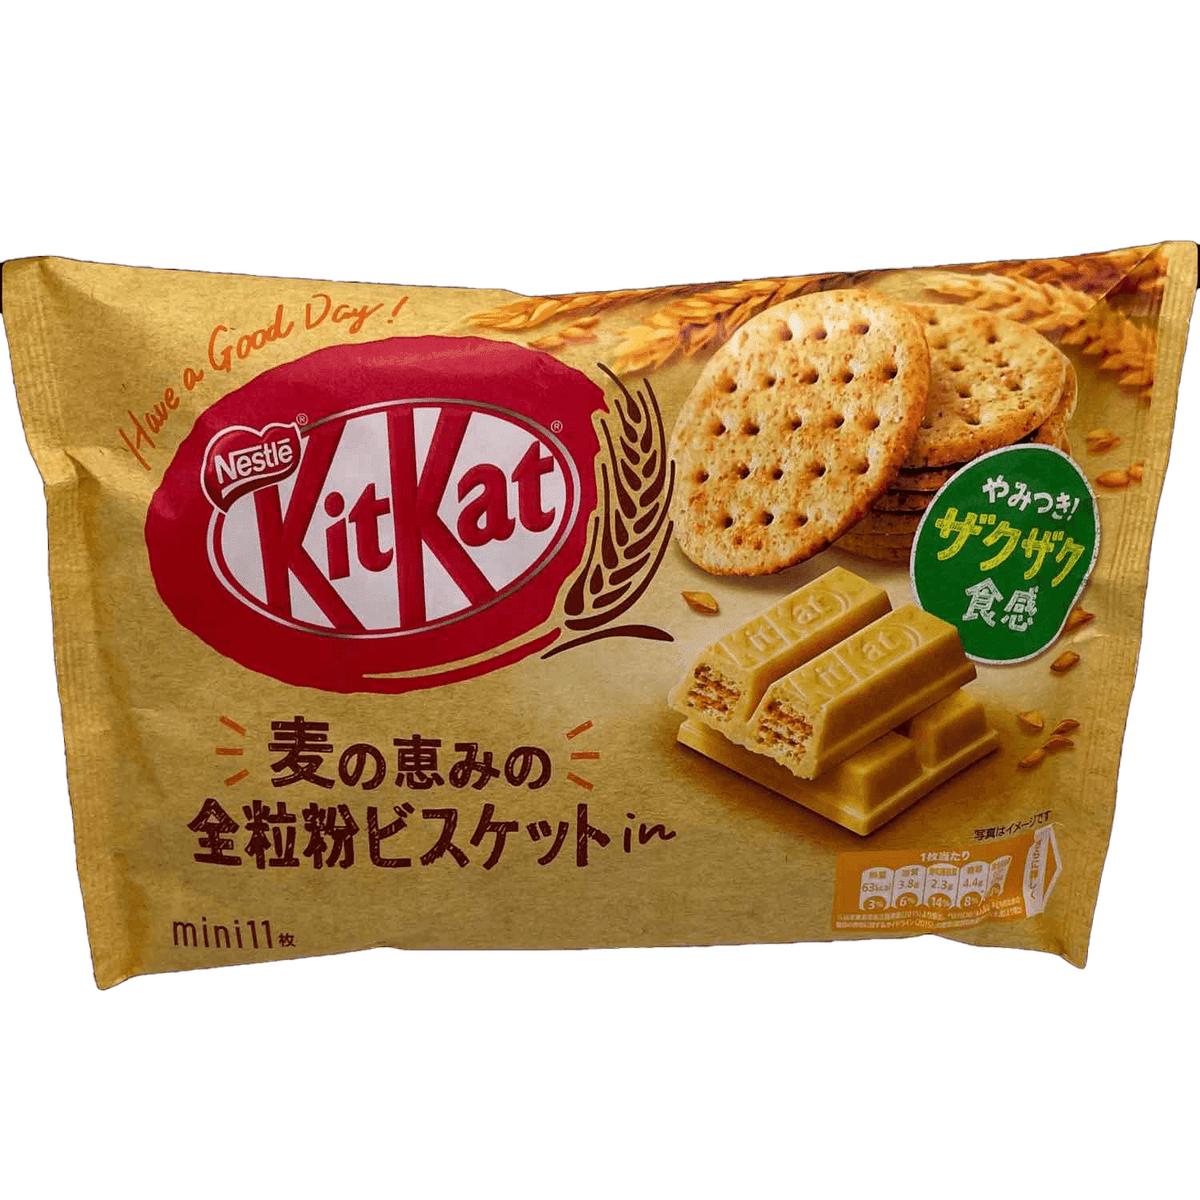 Kit Kat Whole Wheat (Japan) – Sttapia Exotics